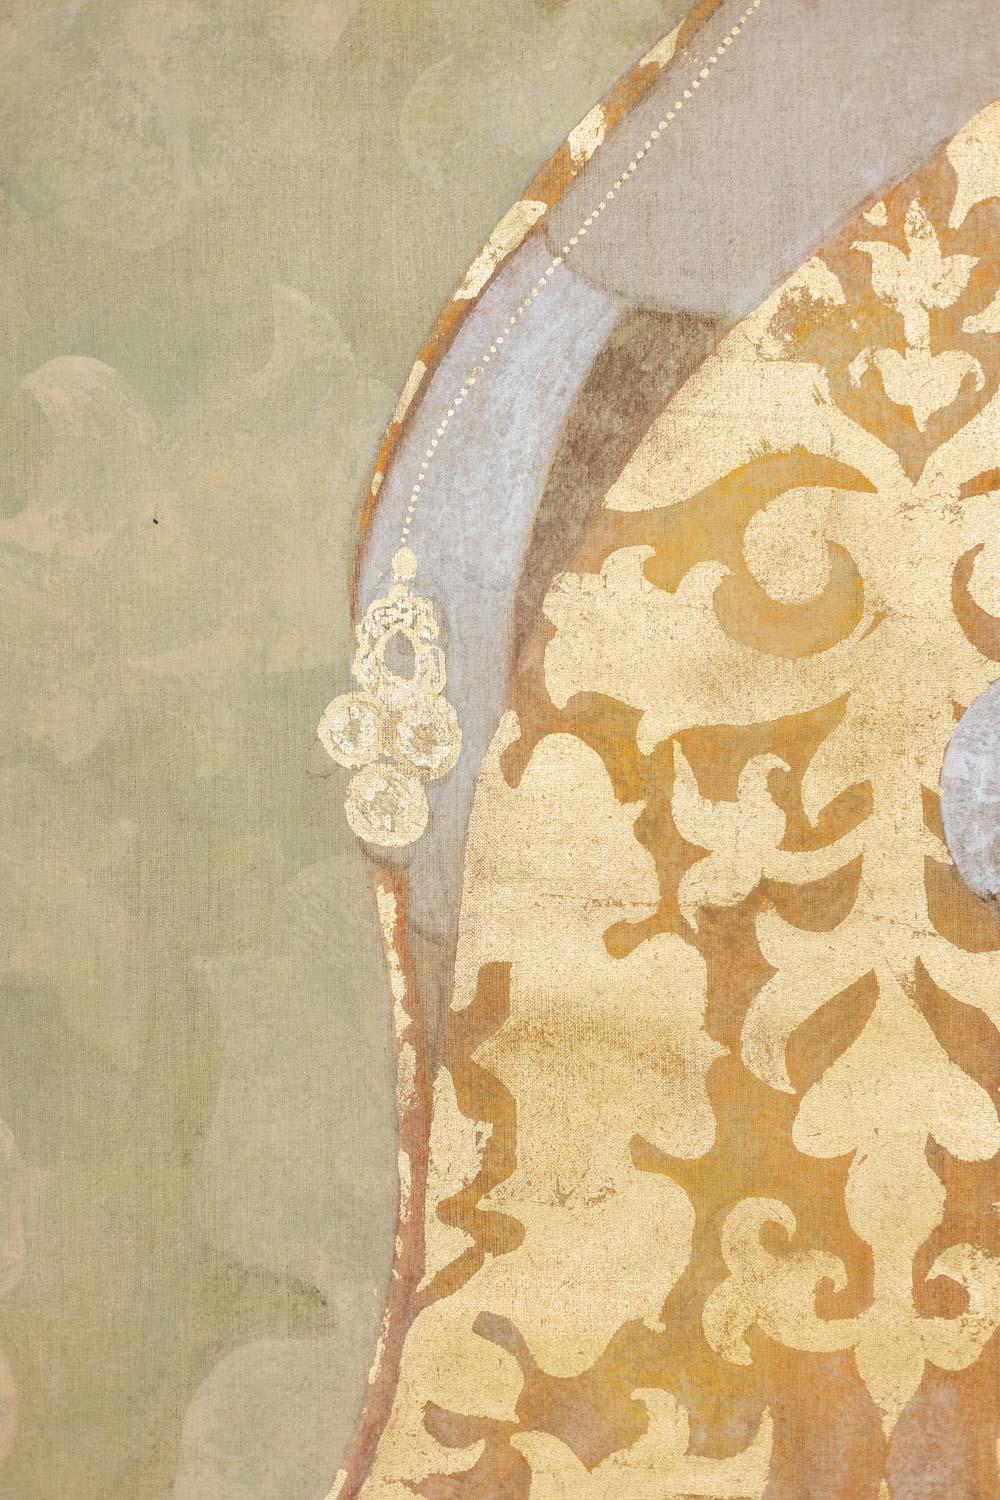 Gemalte Leinwand im Renaissancestil, die eine Dame im Profil in typischer Kleidung dieser Epoche darstellt: mit goldenen Schriftrollen verziertes Kleid, niedriger Hut und in Rollen hochgestecktes Haar, das mit einer Goldkette verziert ist. Sie trägt